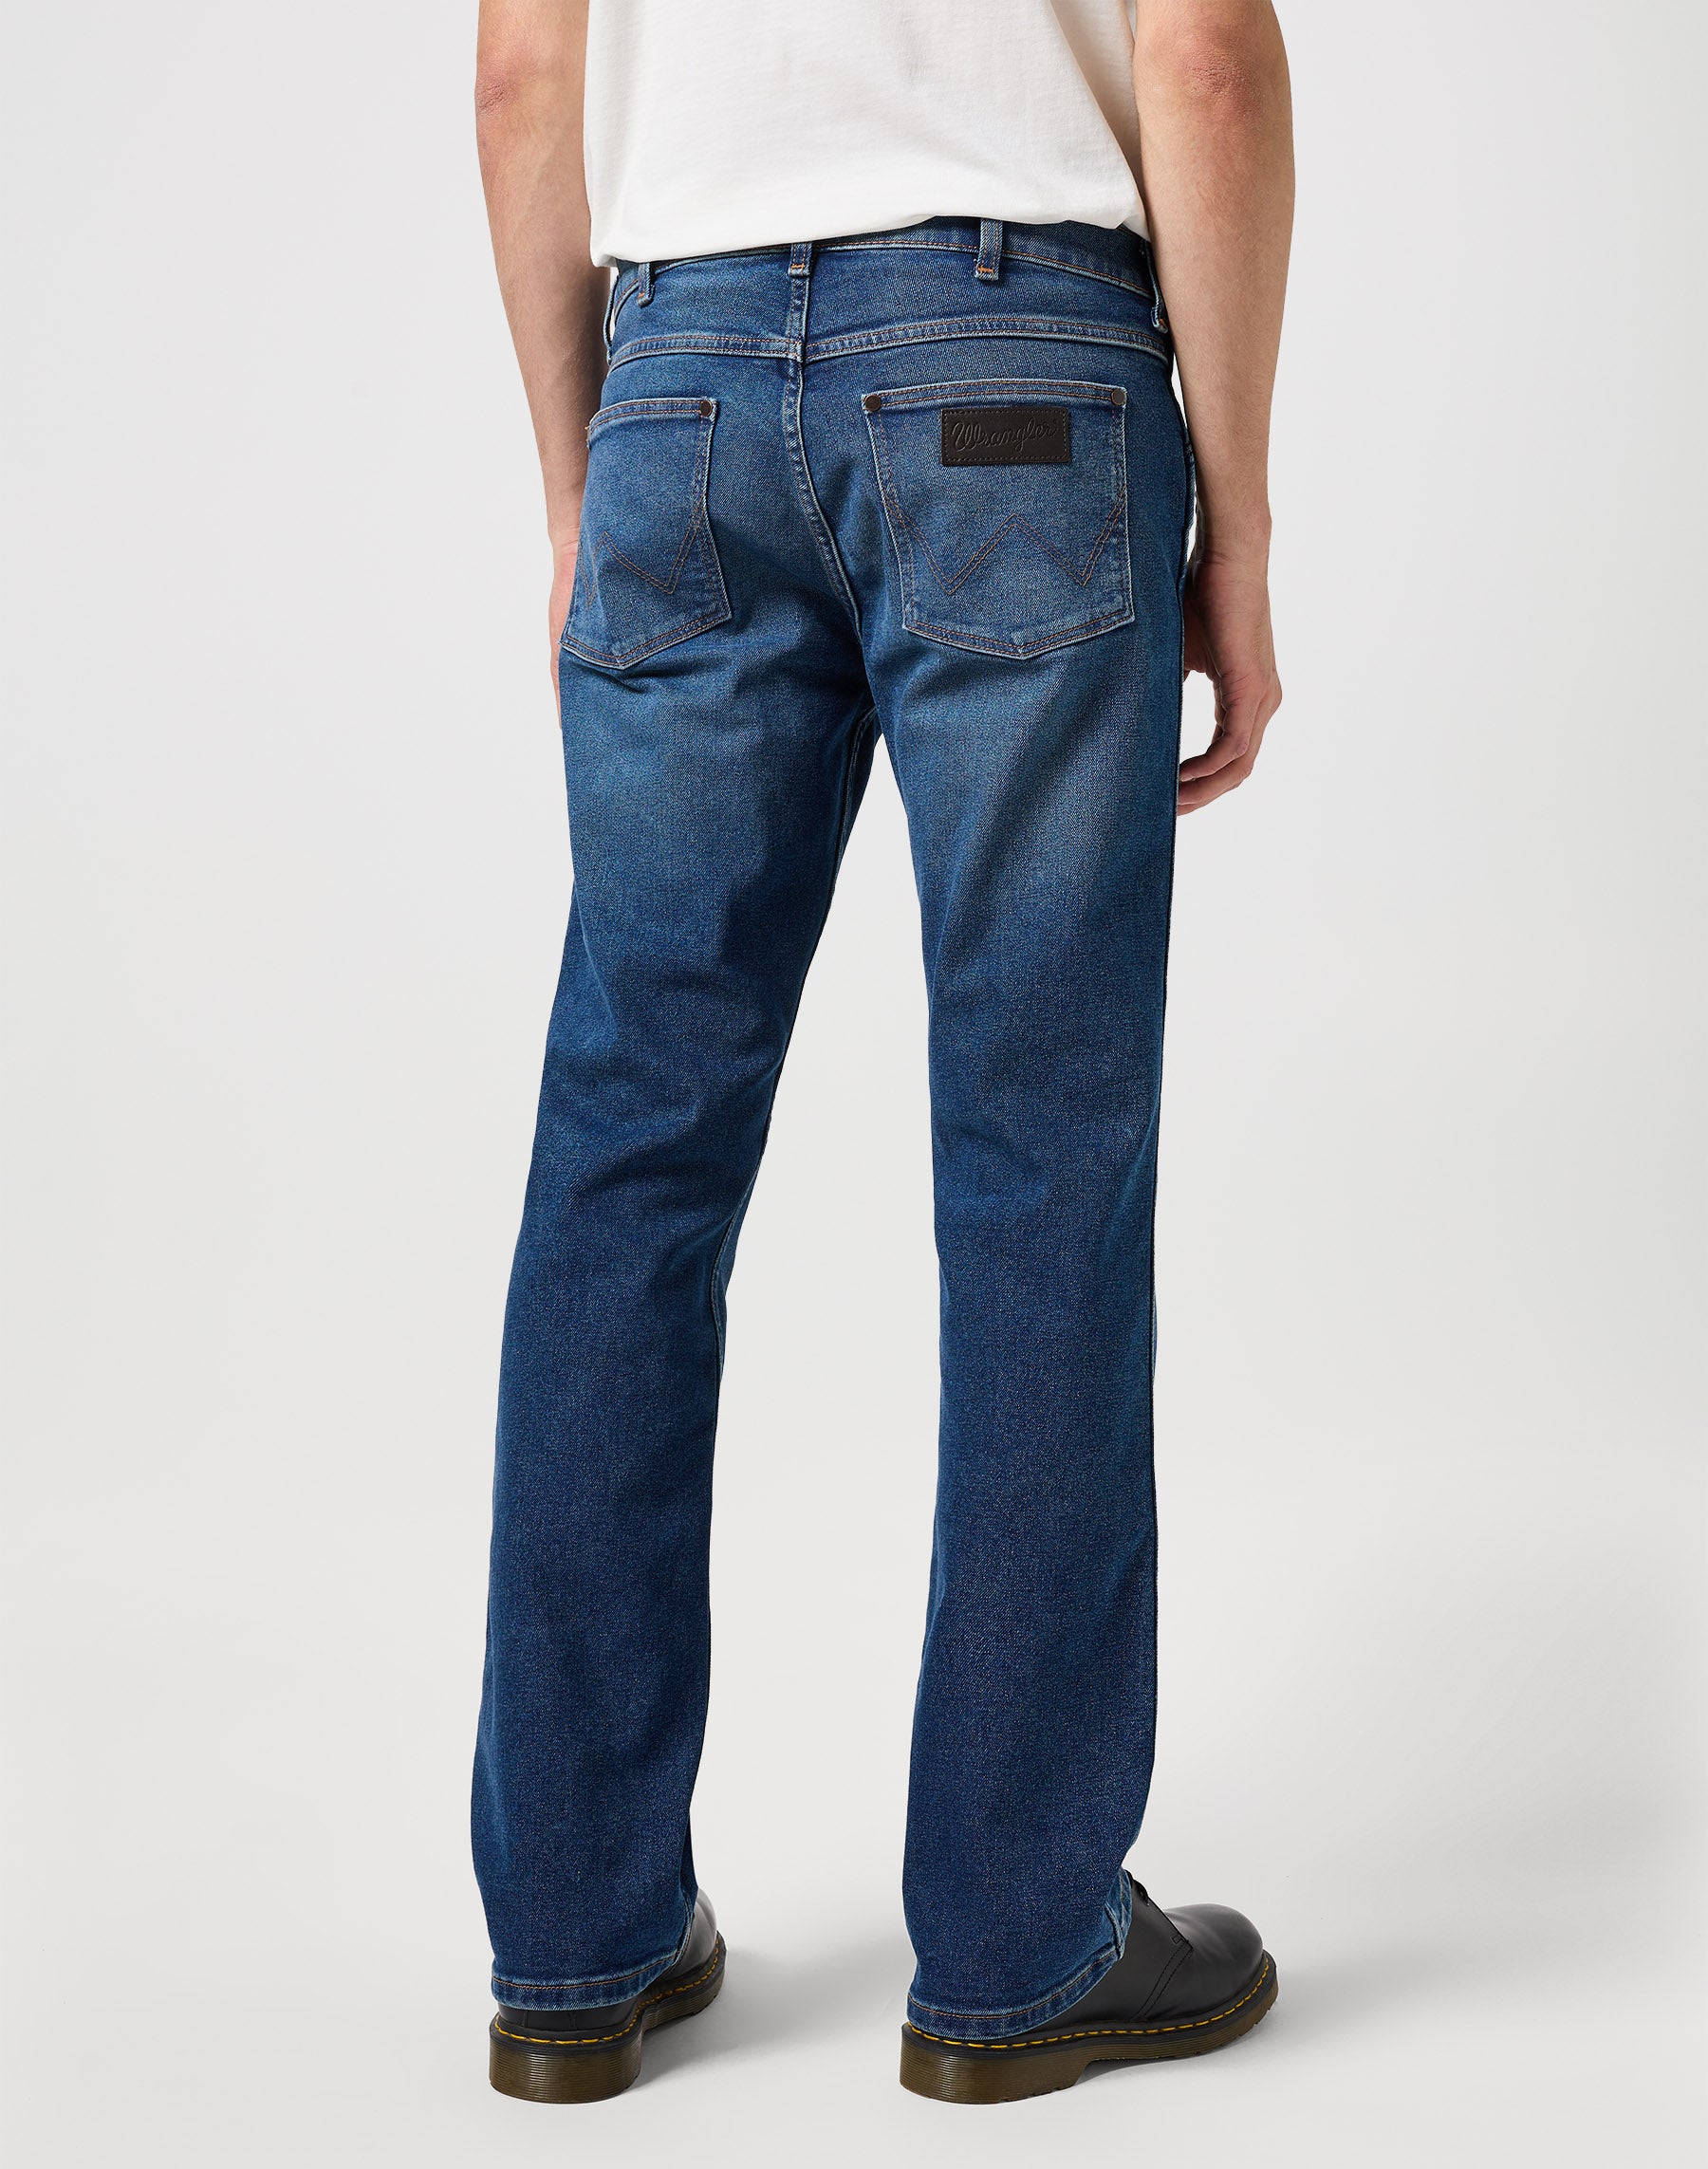 Horizon in Old Habits Jeans Wrangler   